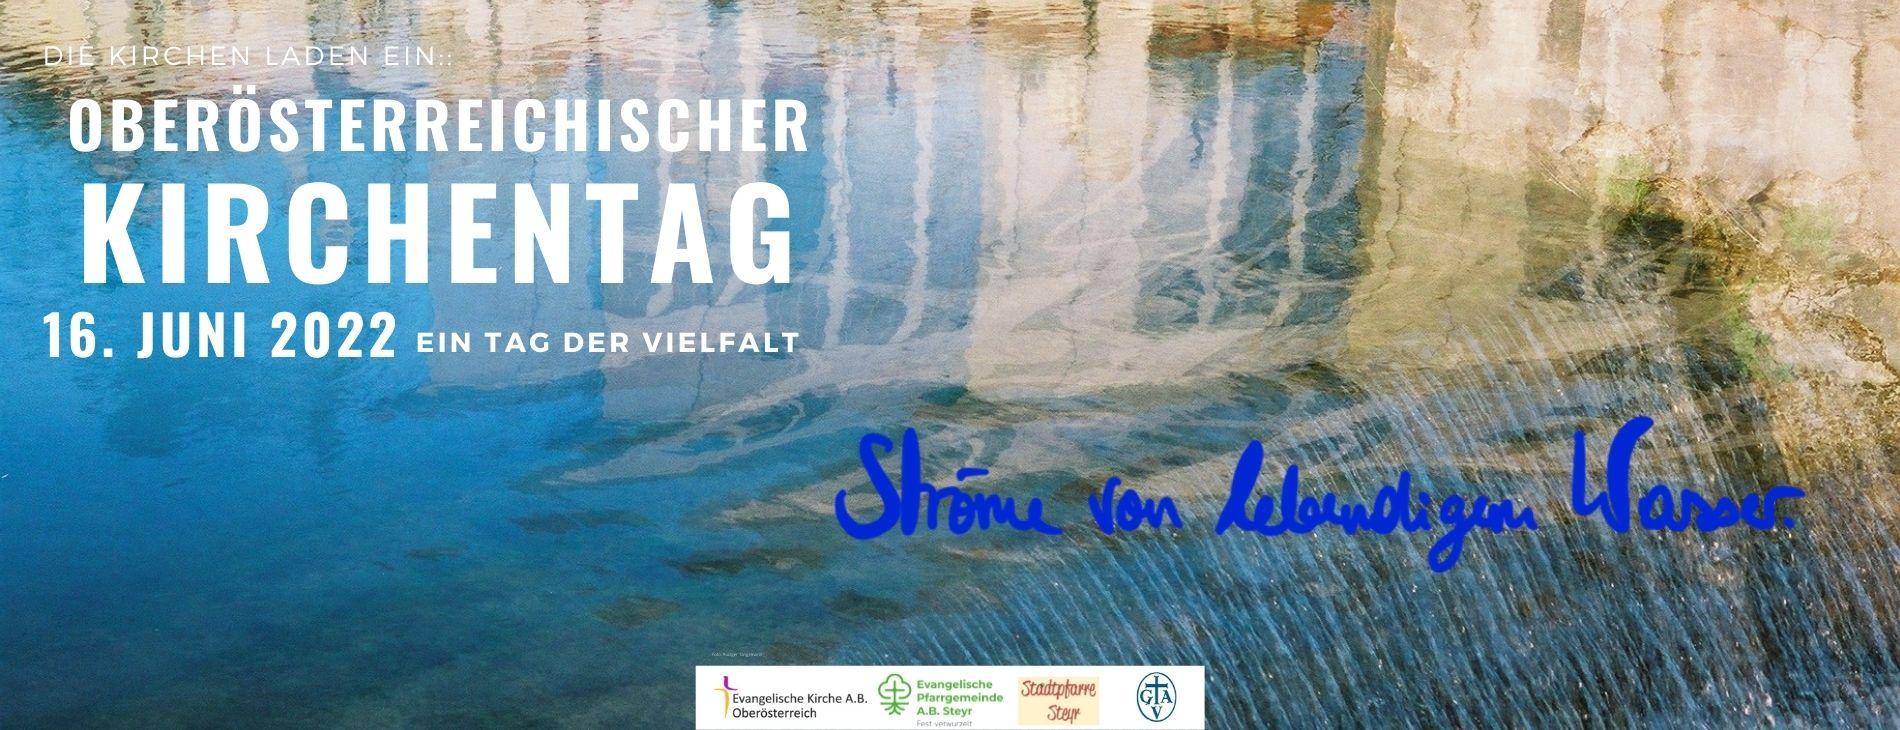 Oberösterreichischer Kirchentag am Donnerstag, den 16. Juni 2022